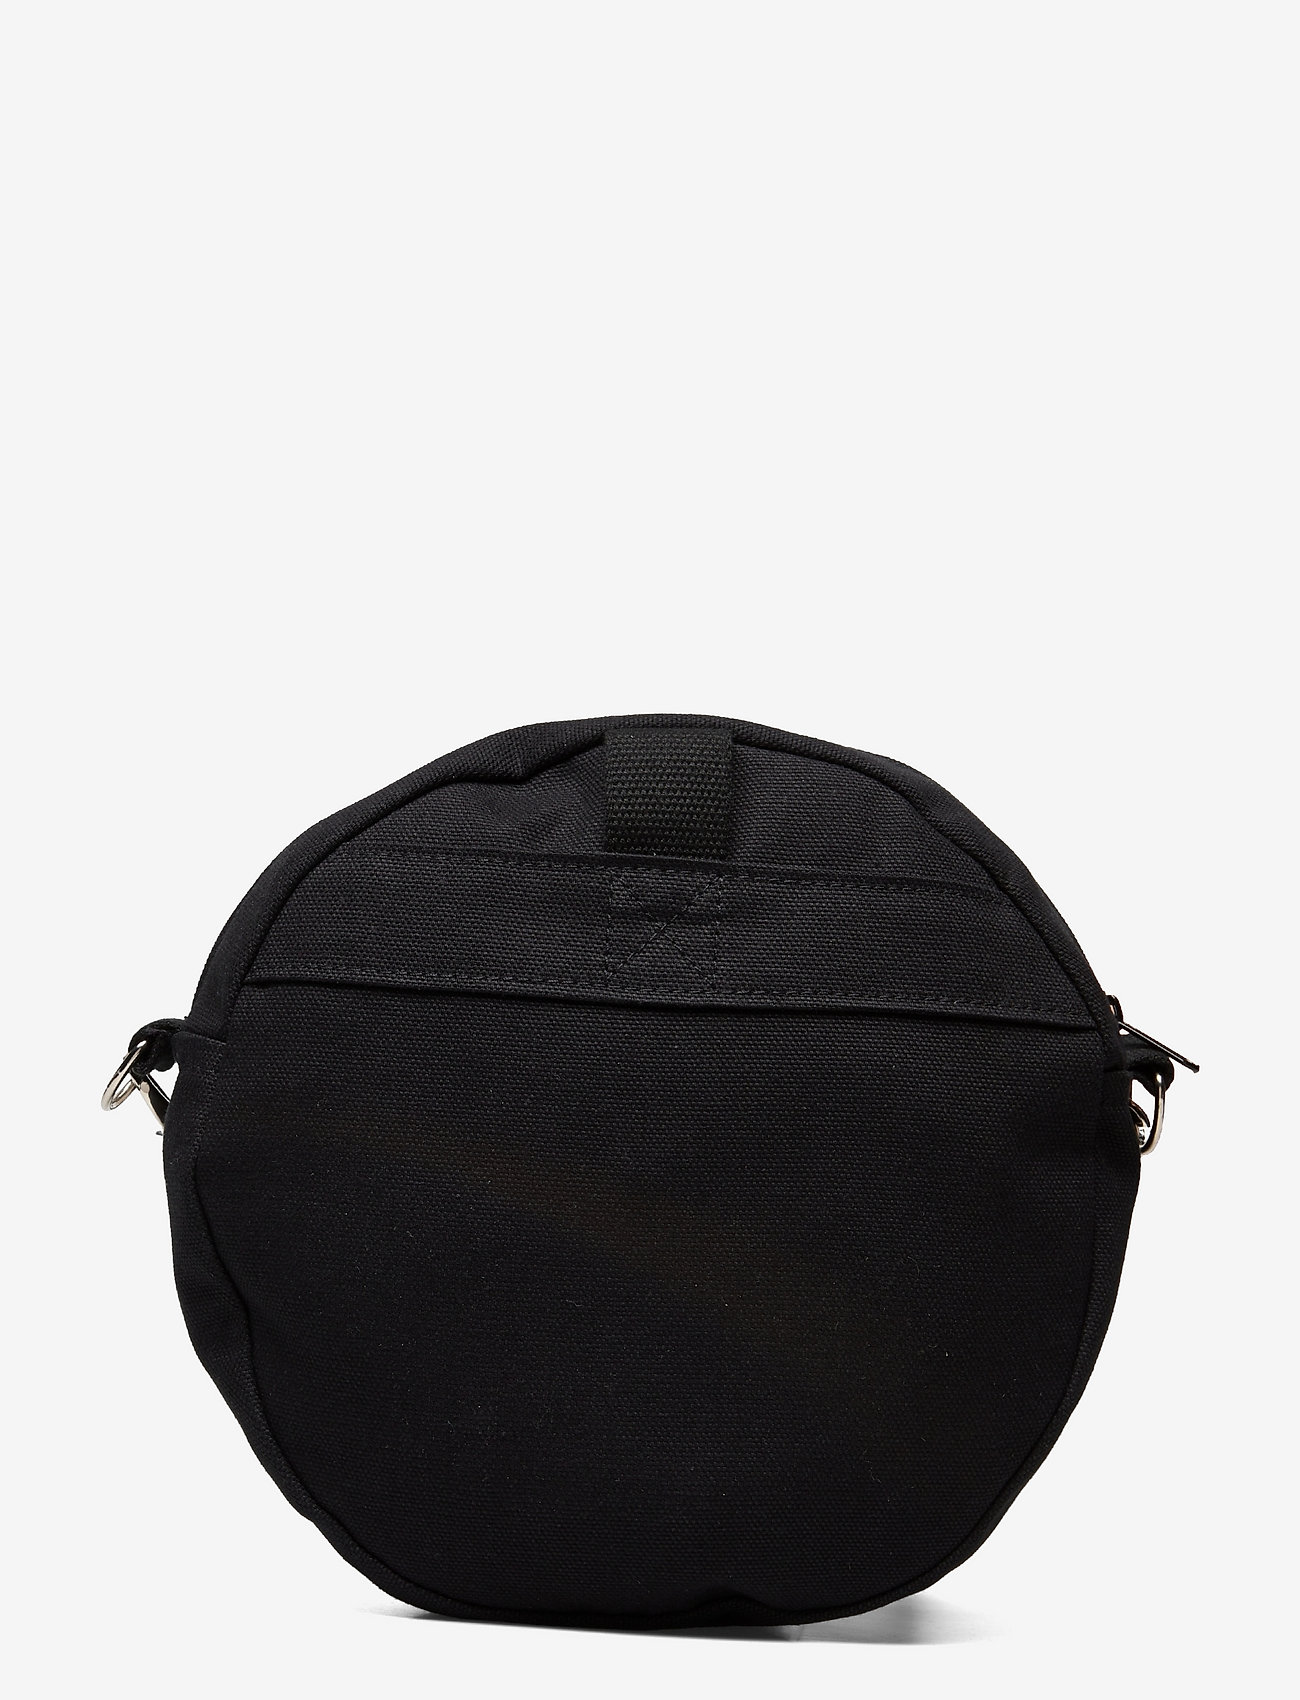 Papu - CIRCLE BAG, black - shoulder bags - black - 1